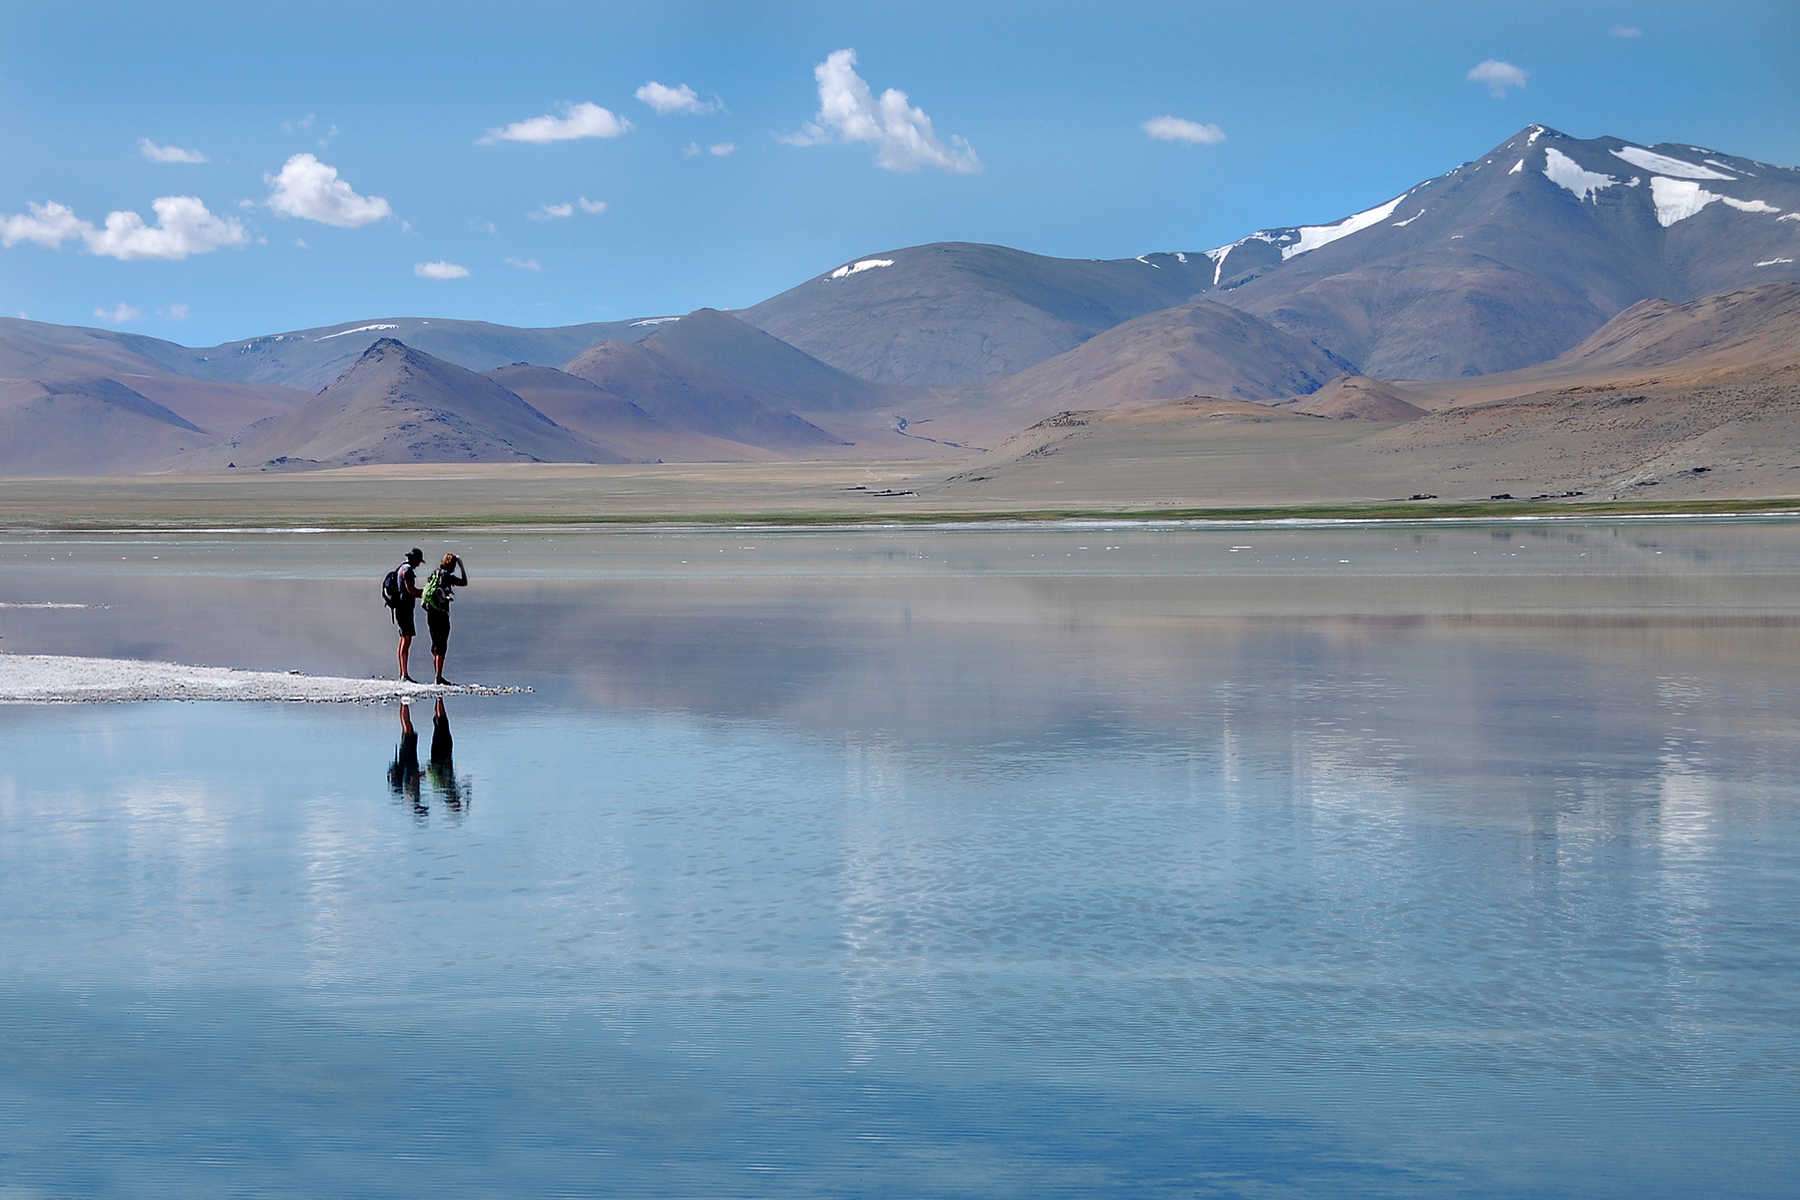 Trekkeurs sur les rives du lac Tso Kar, dans le Changtang, en Inde Himalayenne